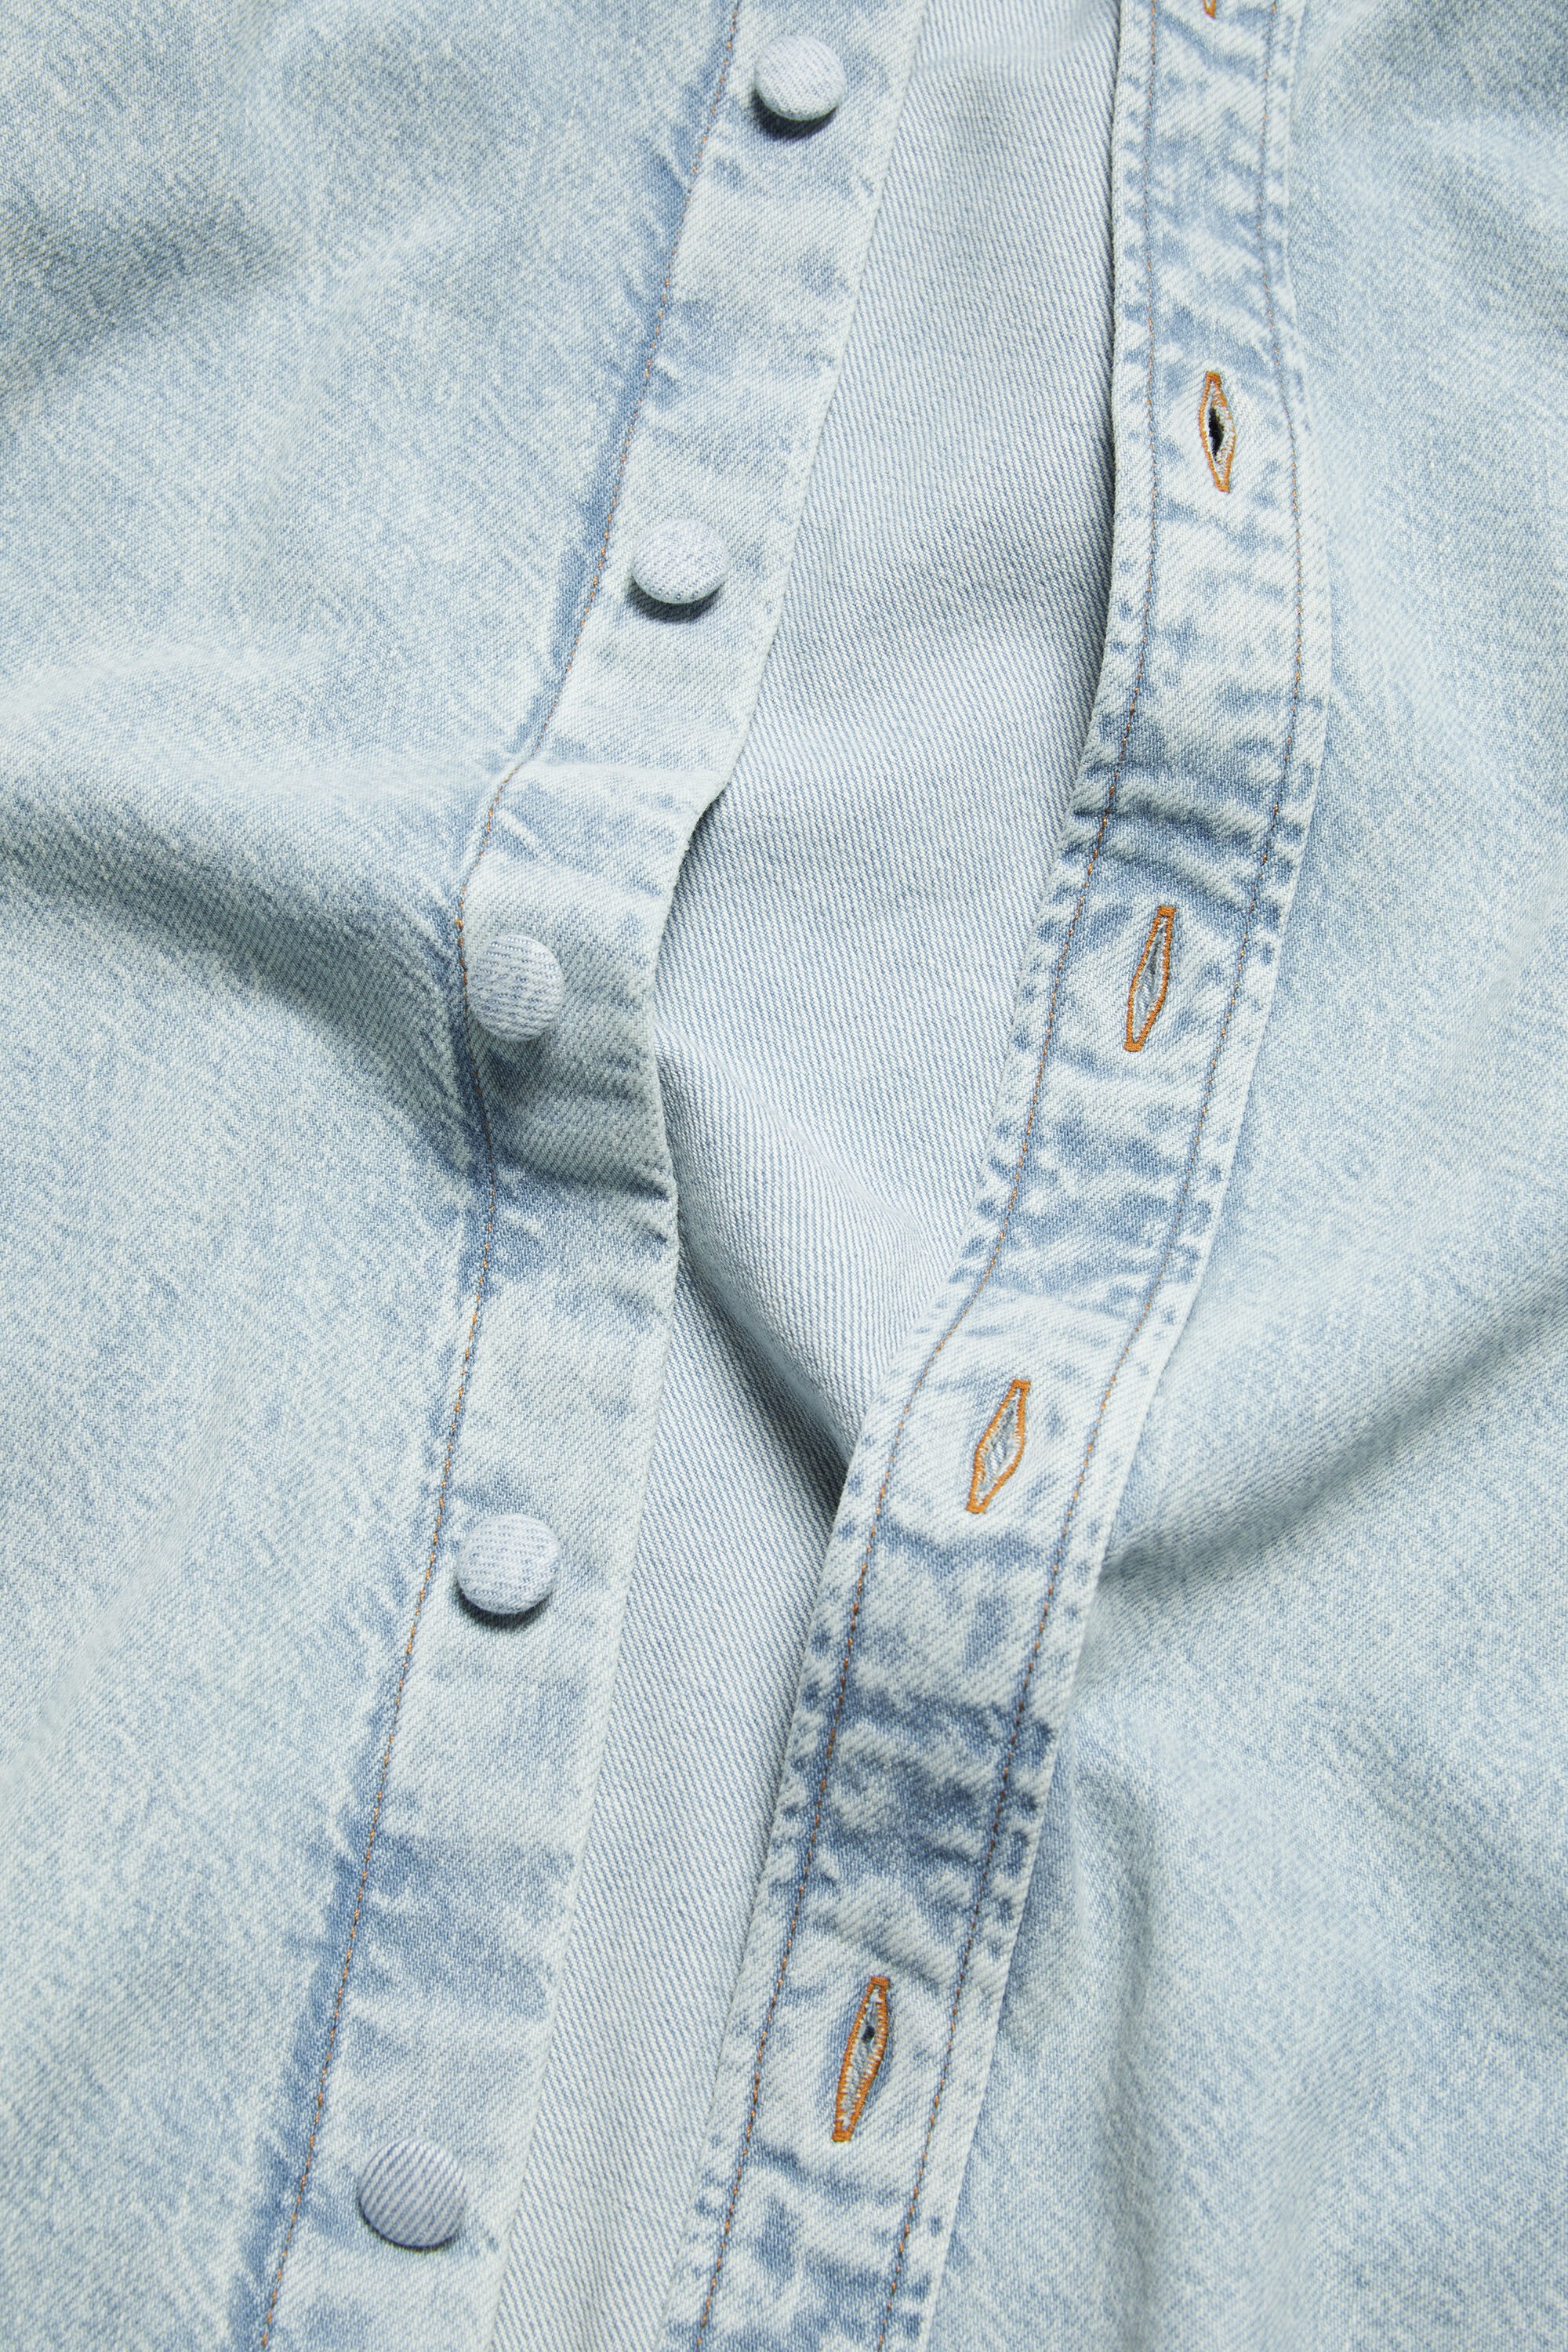 Denim button-up shirt - Relaxed fit - Indigo blue - 5